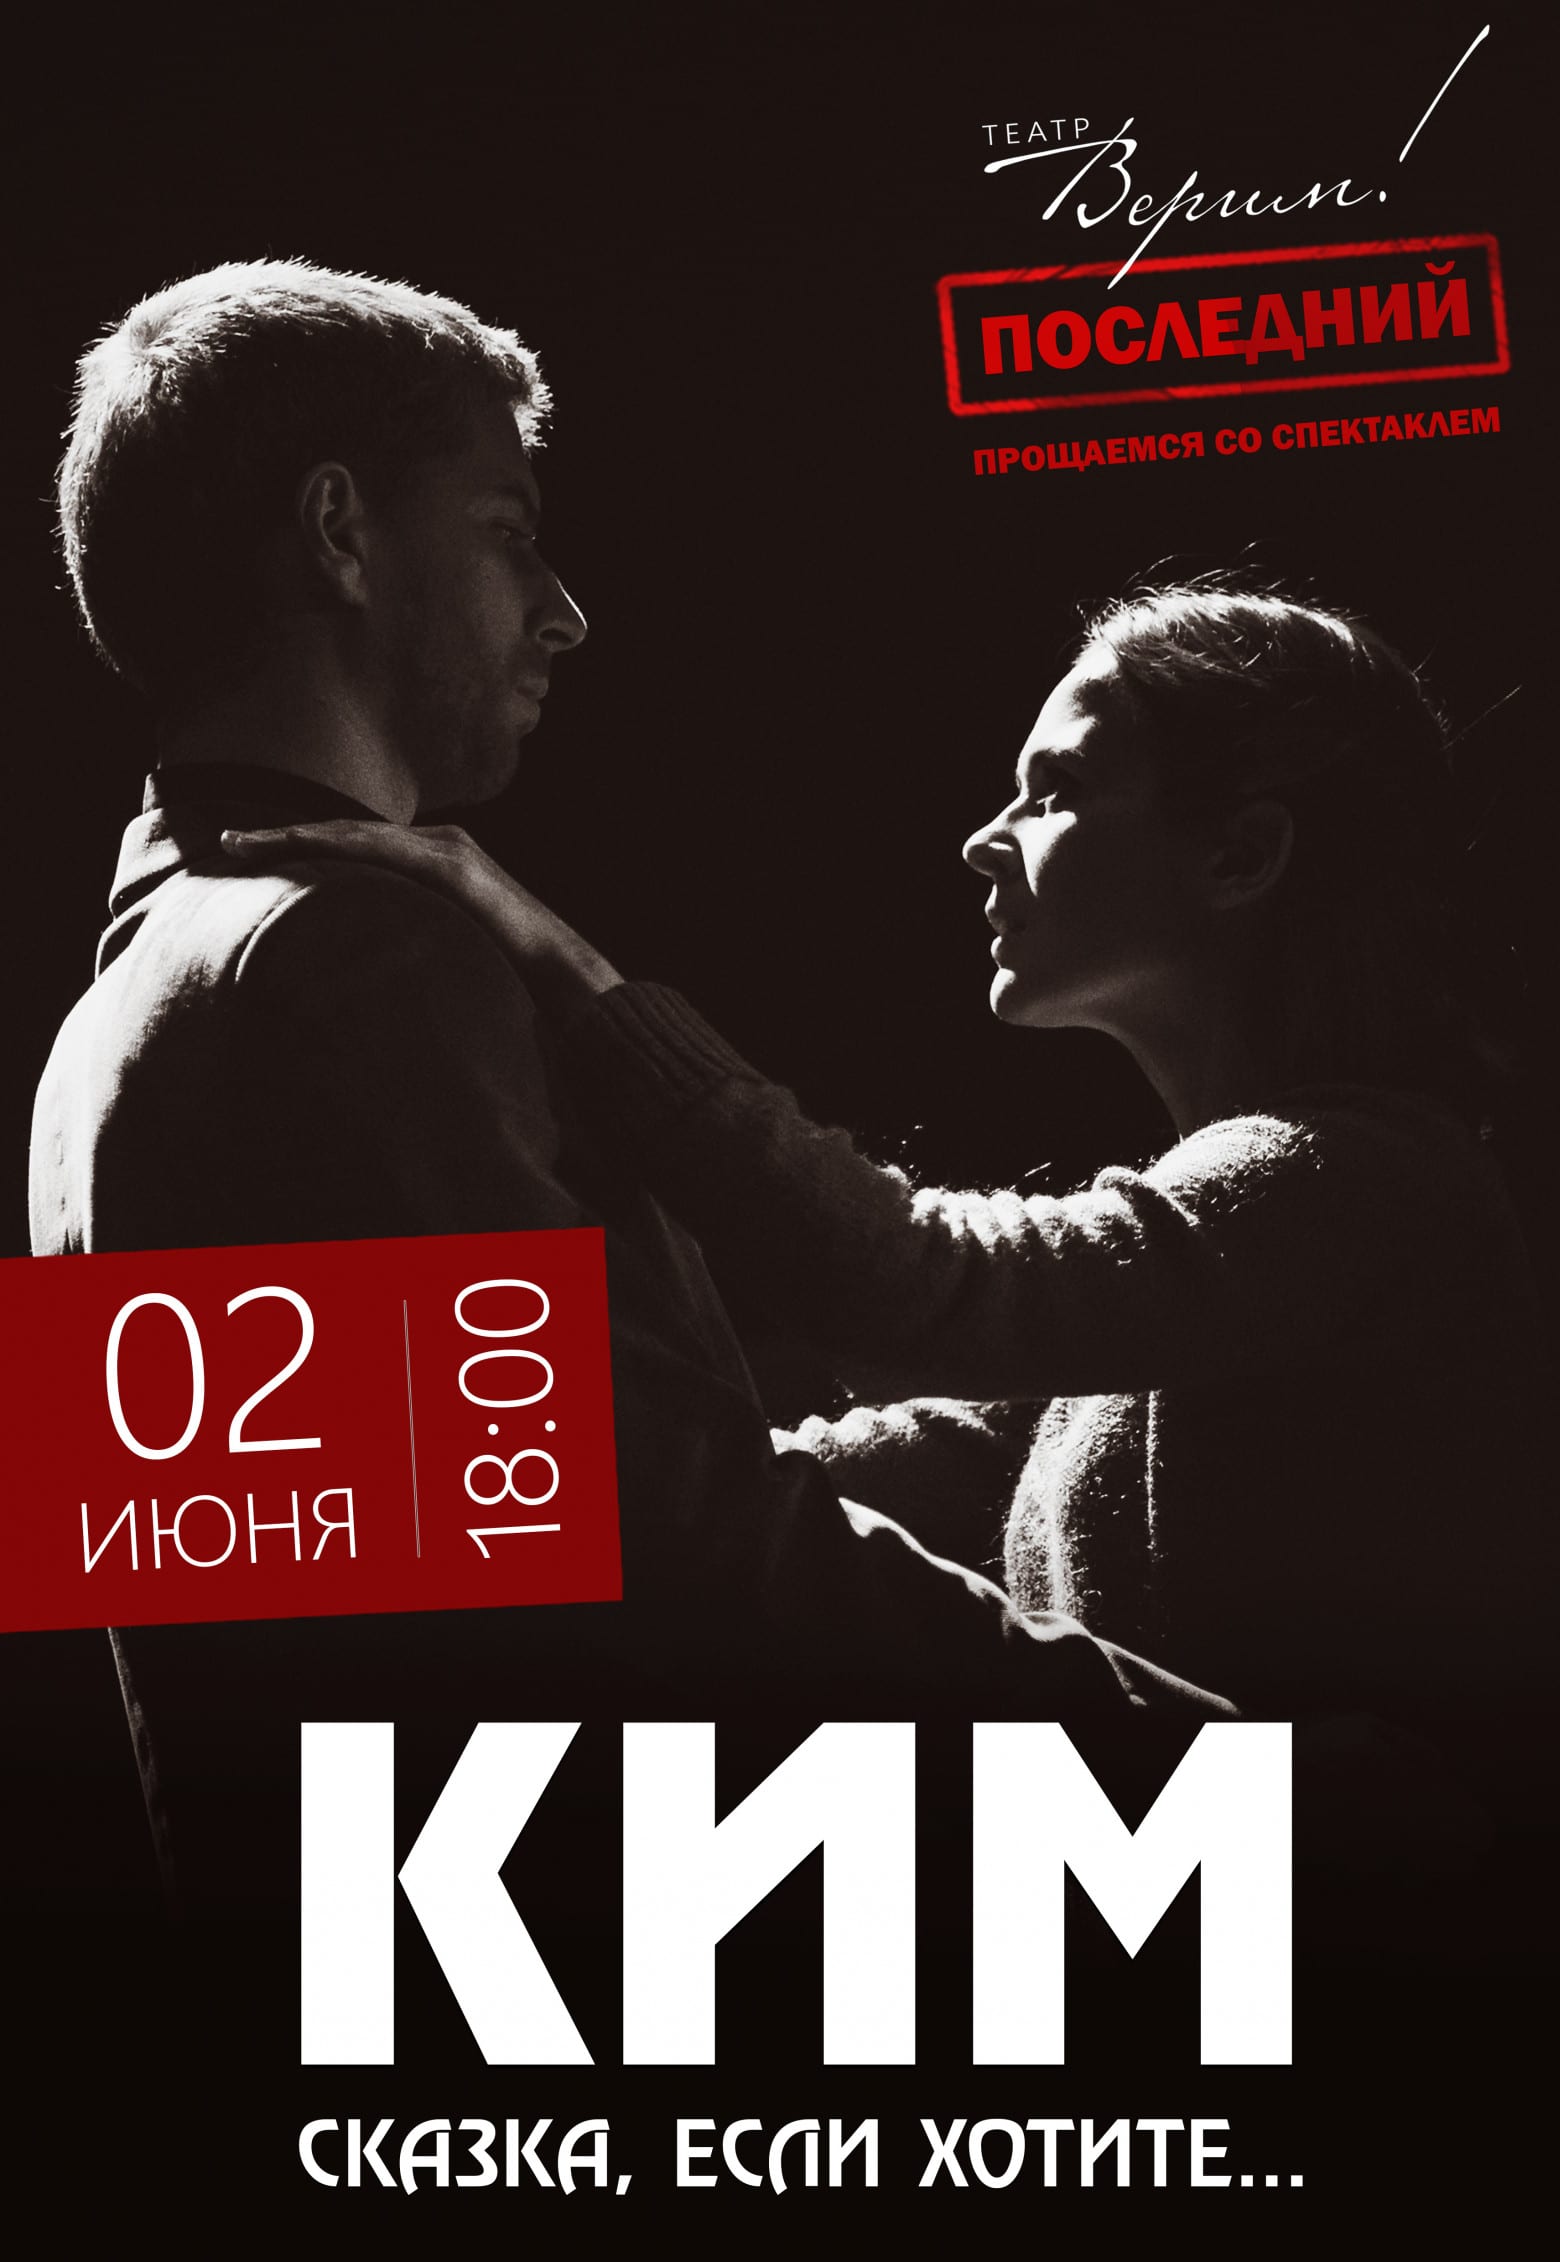 Театр Верим - Ким Днепр, 02.06.2019, цена, купить билеты. Афиша Днепра